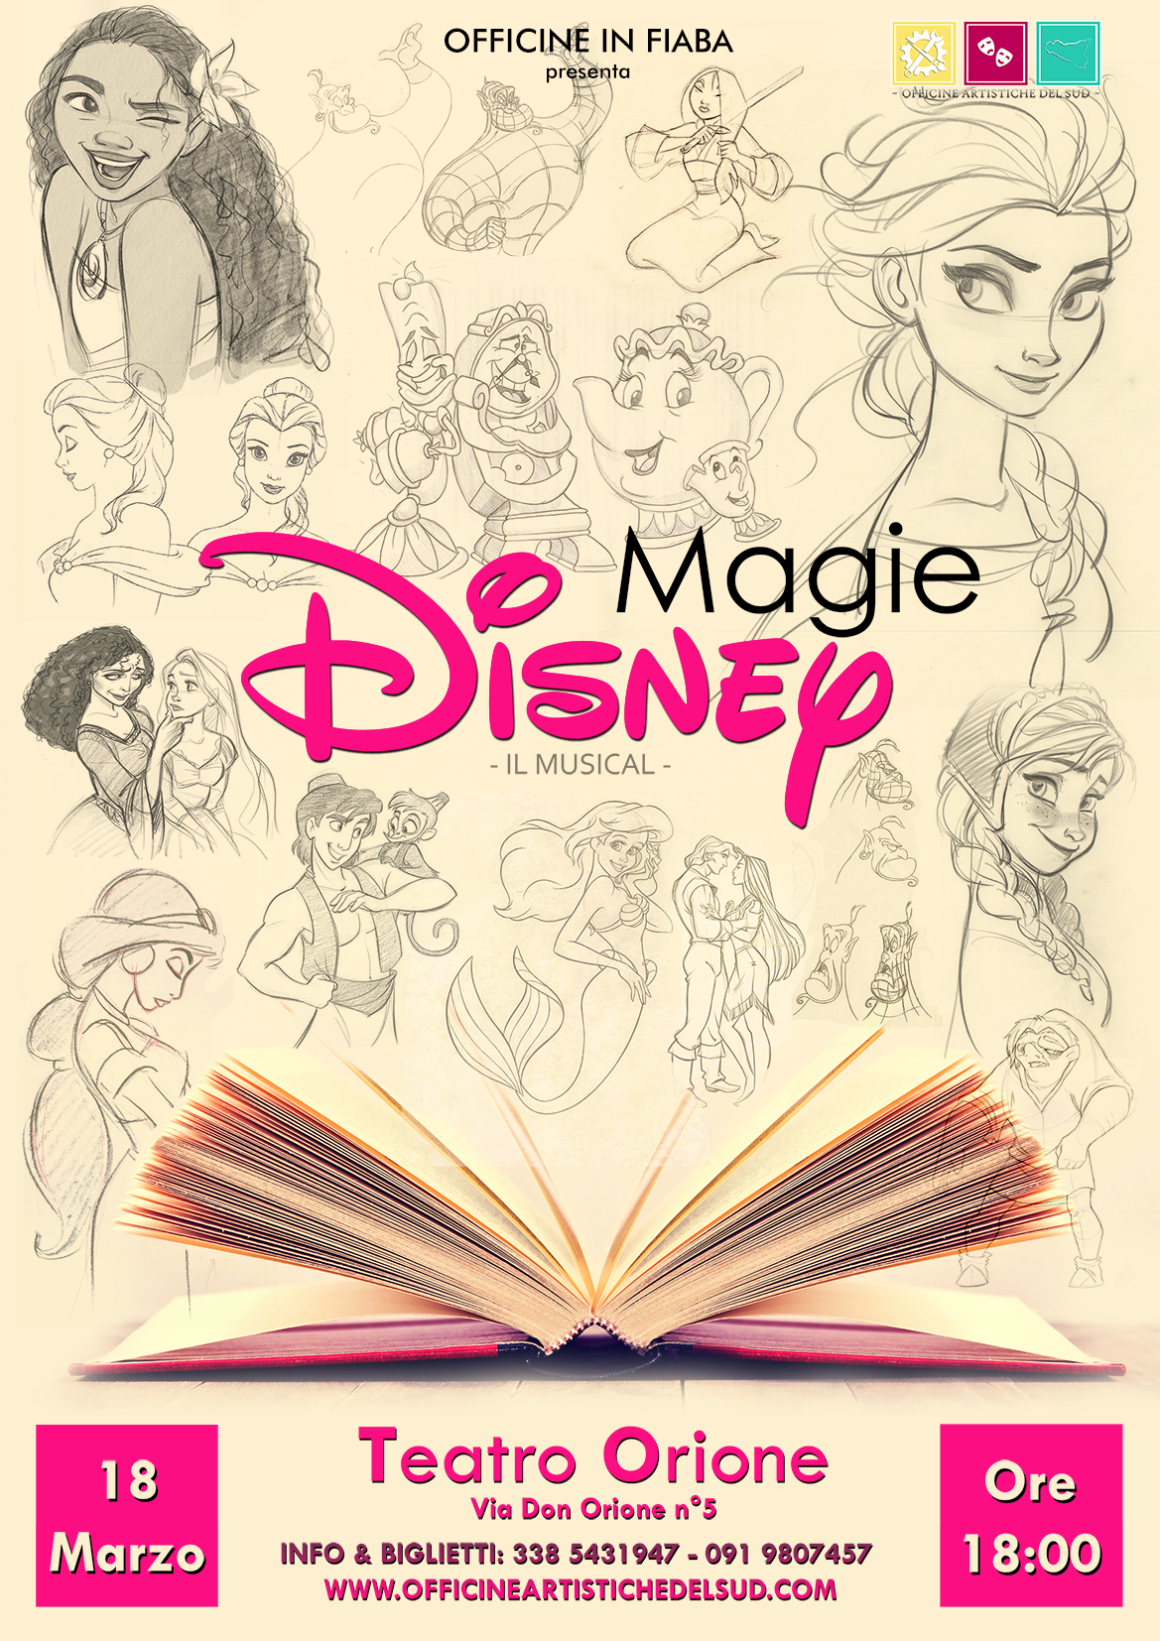 Il 18 Marzo tornano le “Magie Disney”